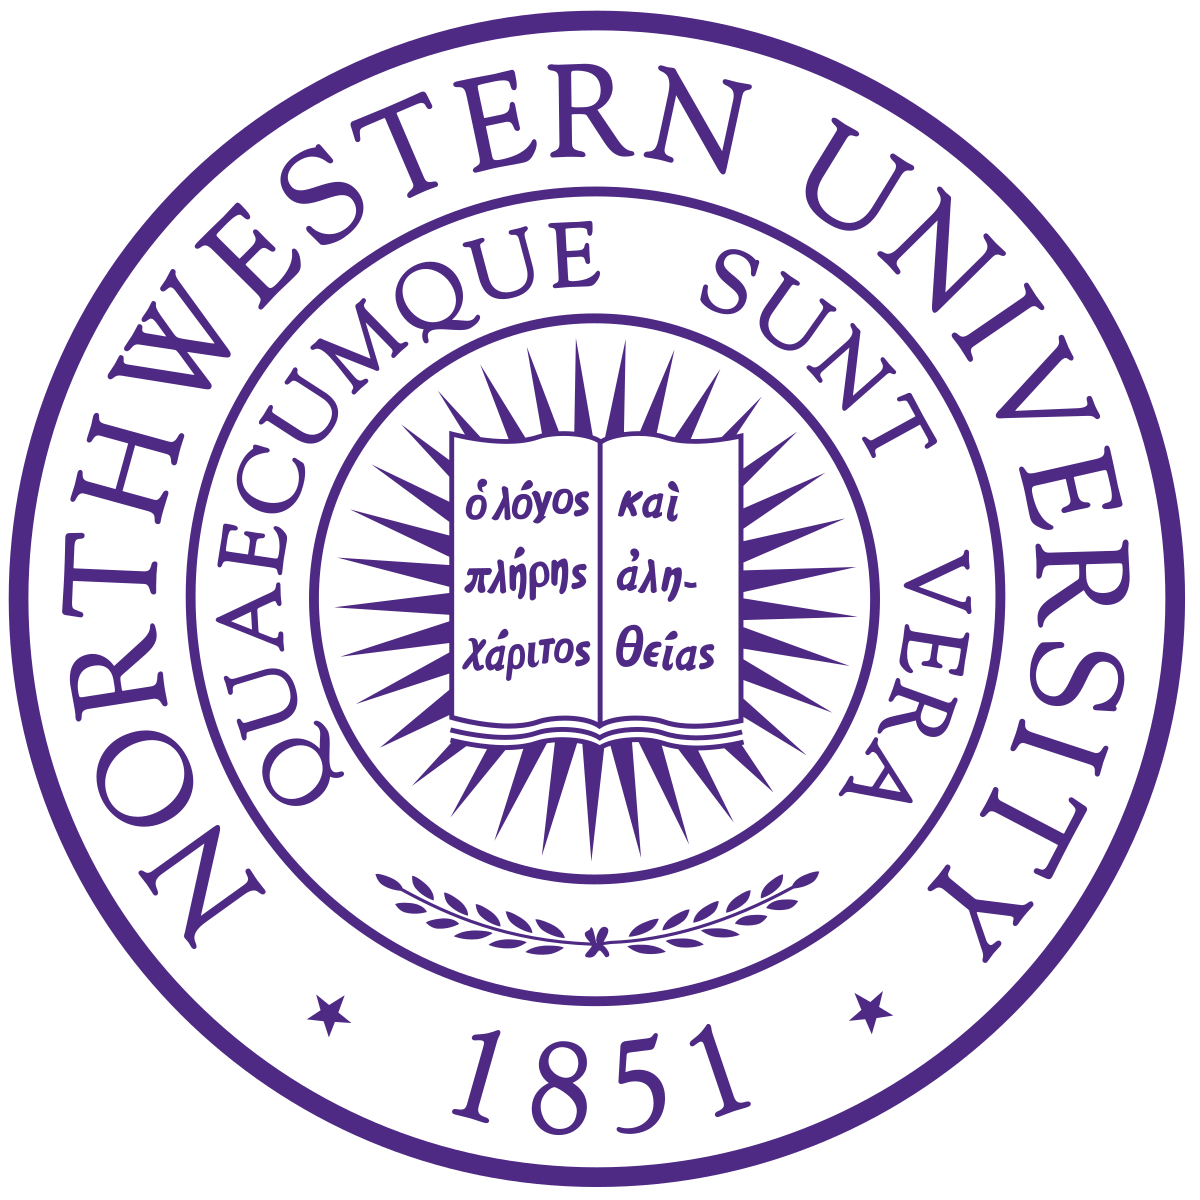 Northwestern U Logo - Northwestern University